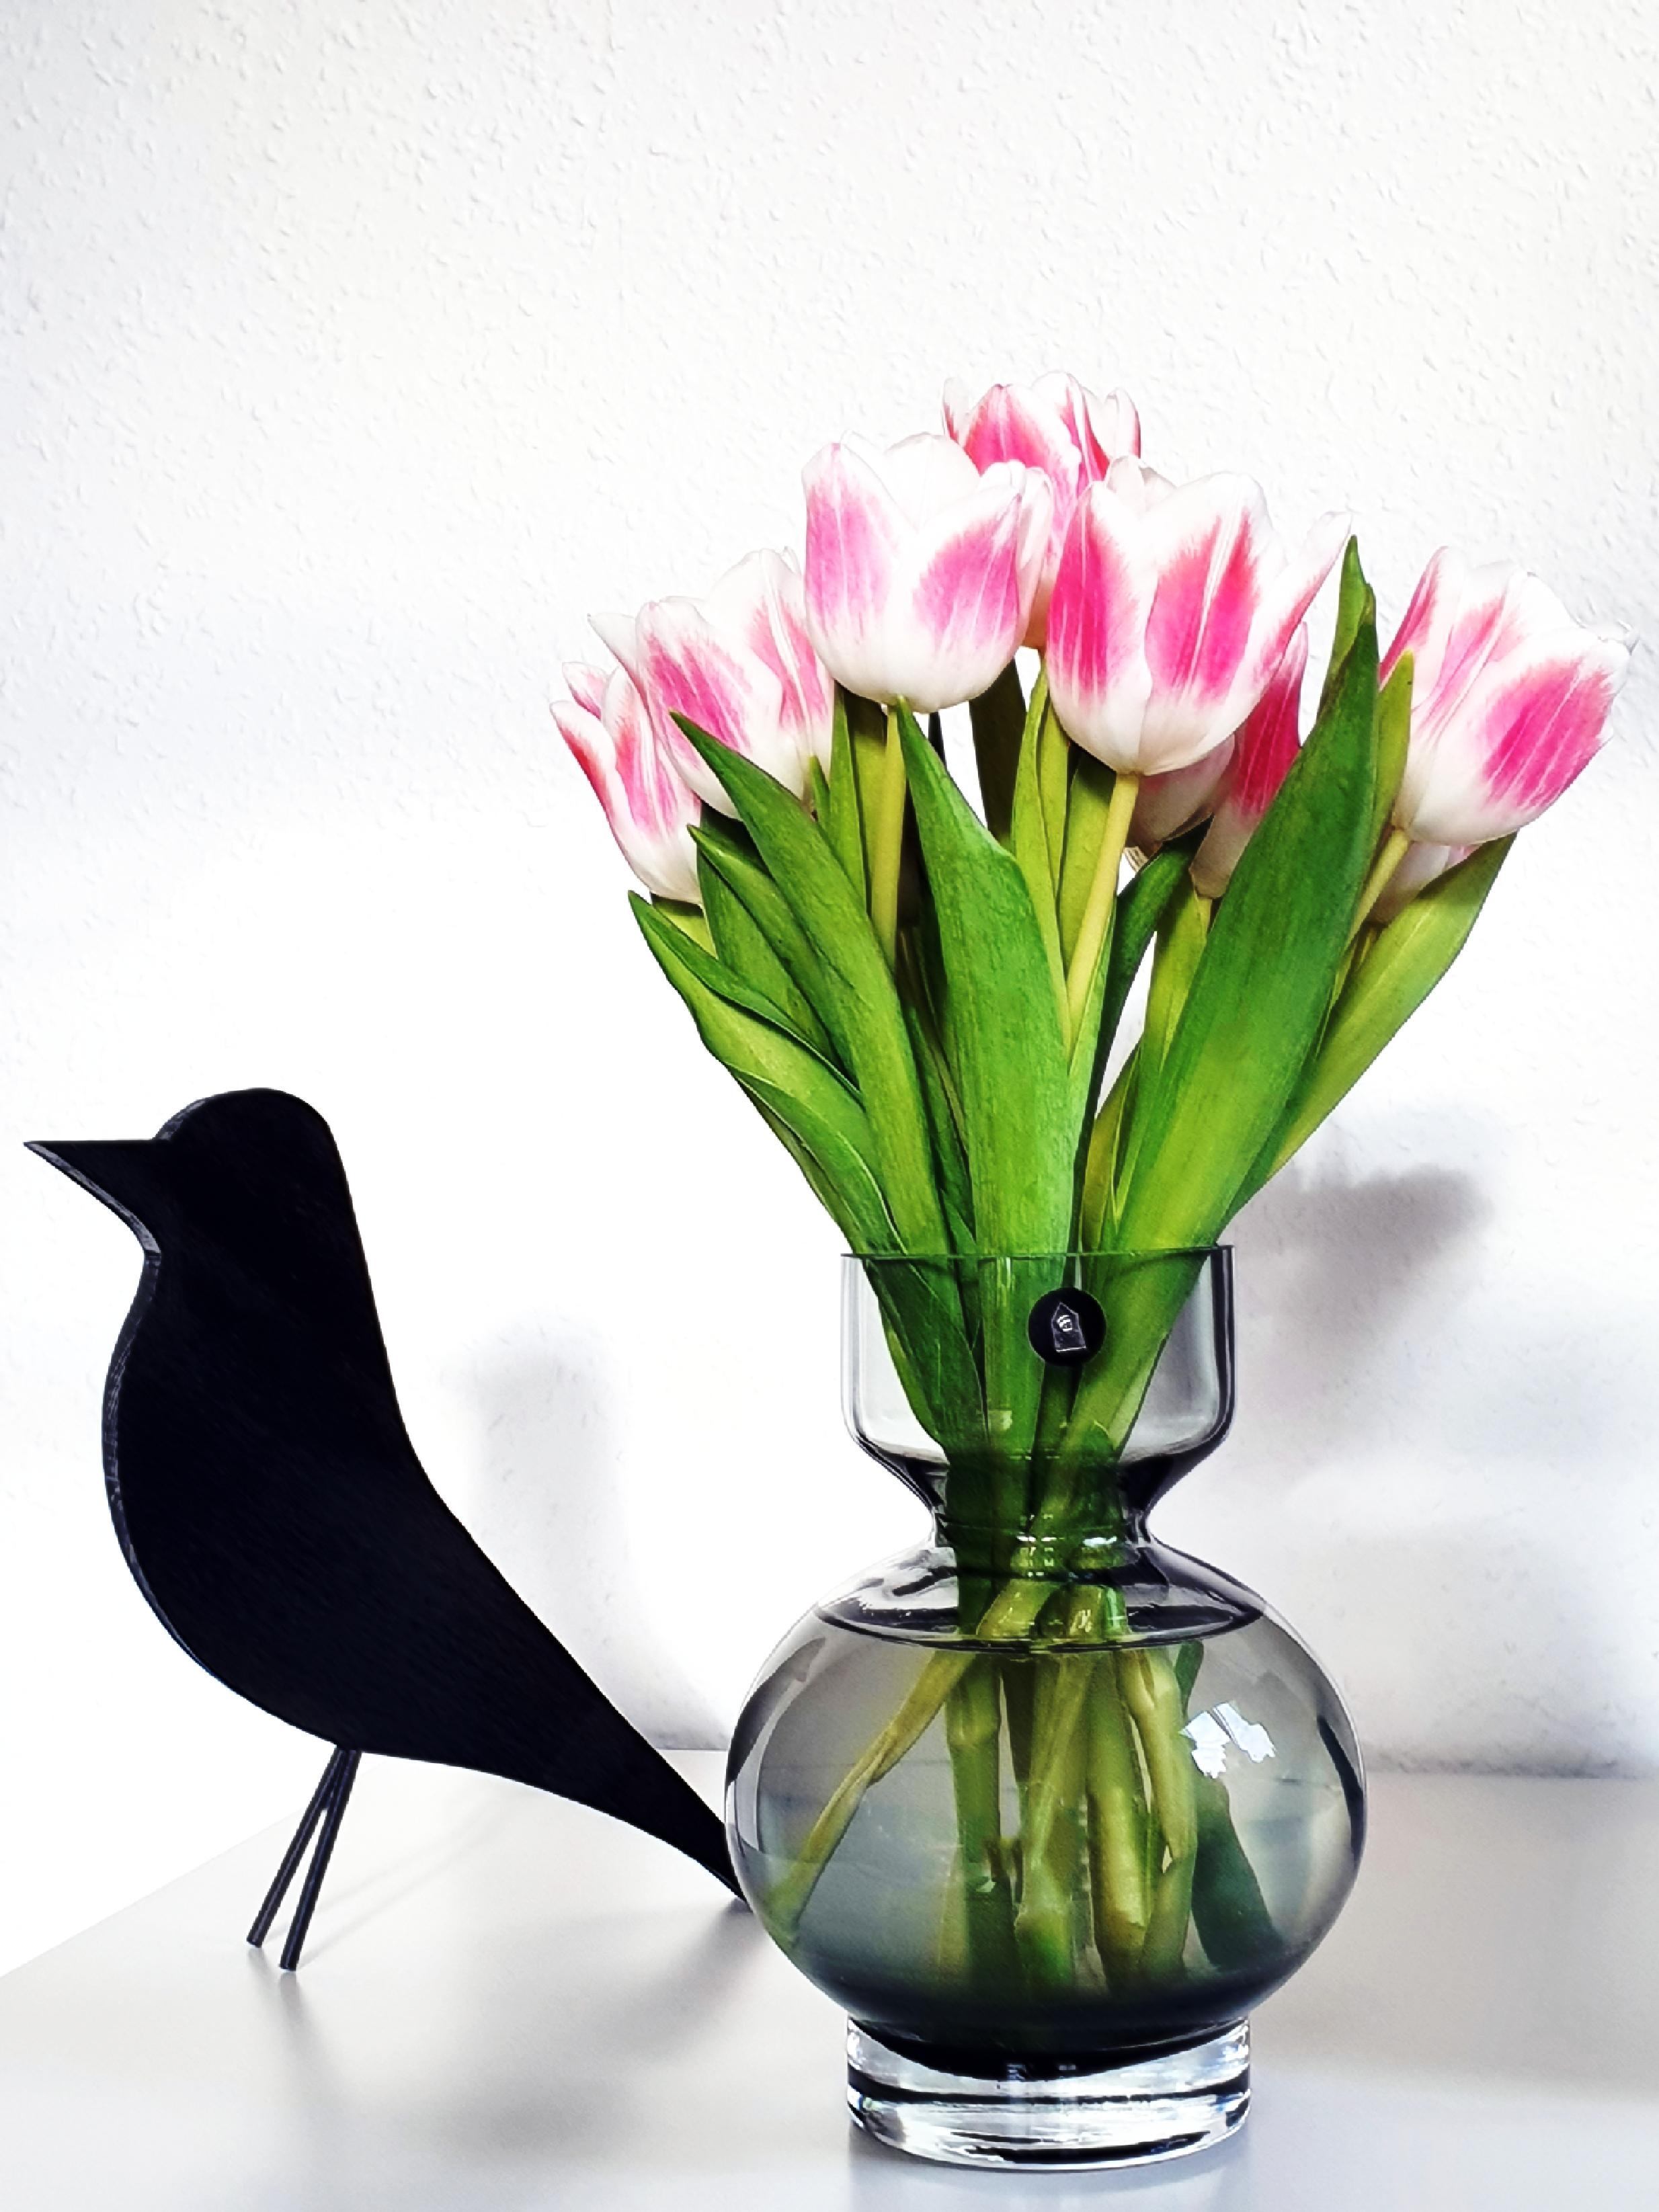 Ein bisschen Frühling ist eingezogen...

#flowers #freshflowers #tulpenliebe #tulpenglück #tulpen #couchstyle